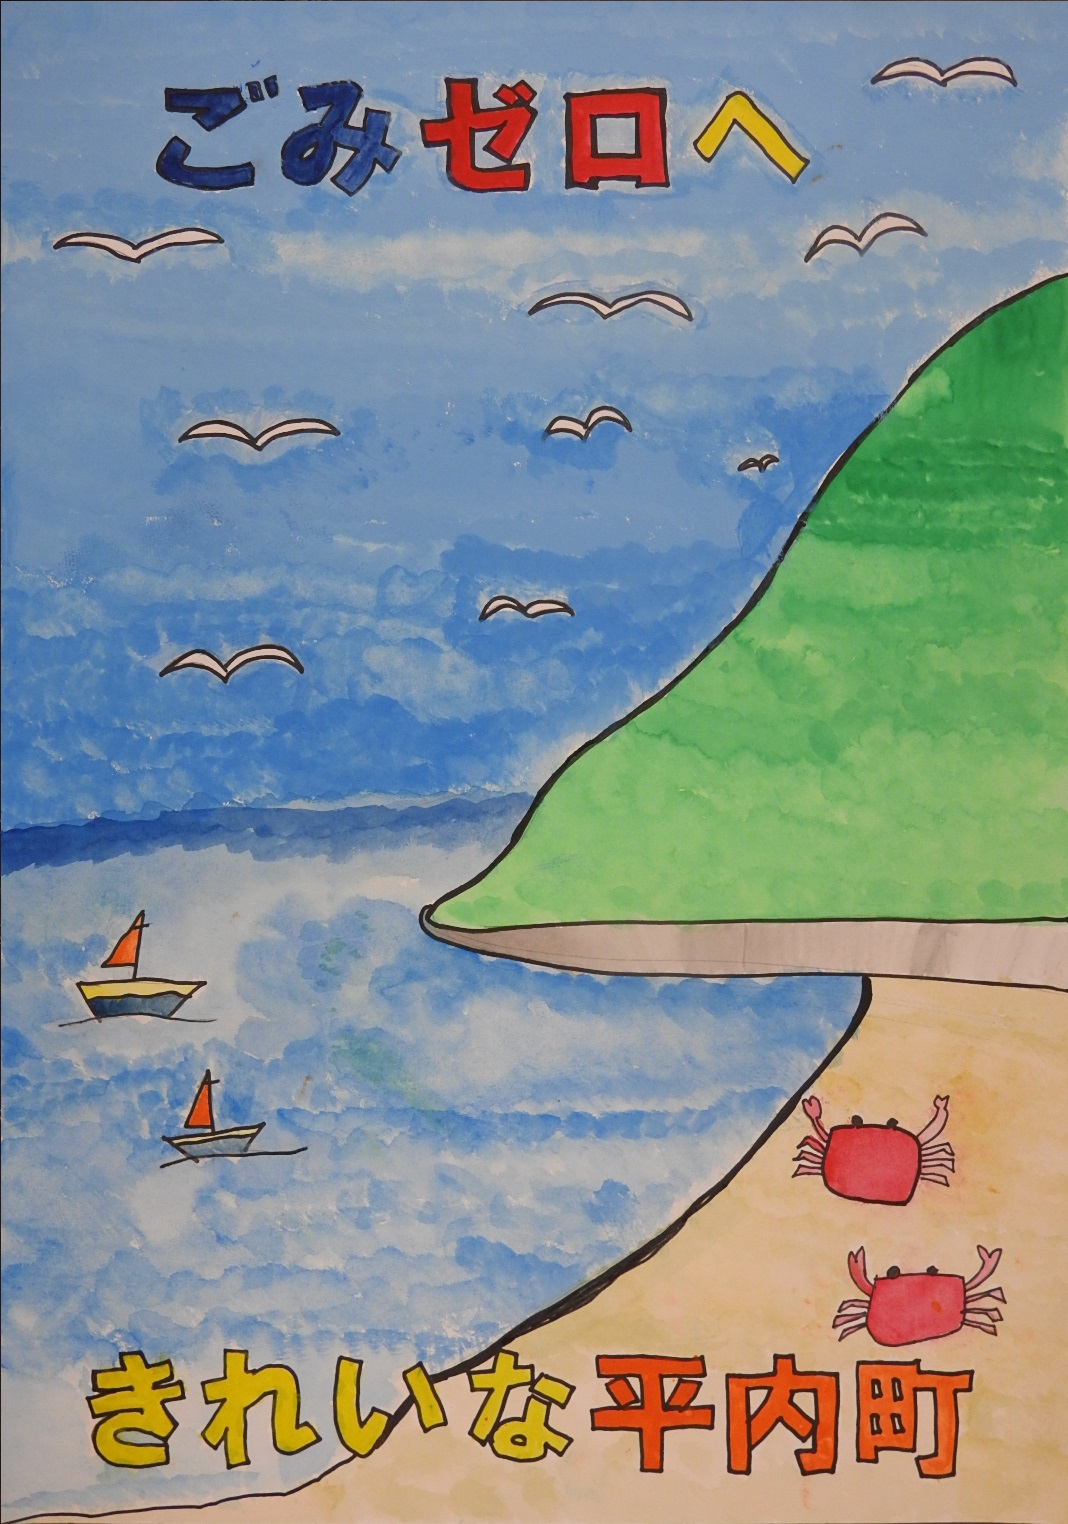 「ごみゼロへきれいな平内町」と書かれた、ごみのない砂浜が描かれたポスター